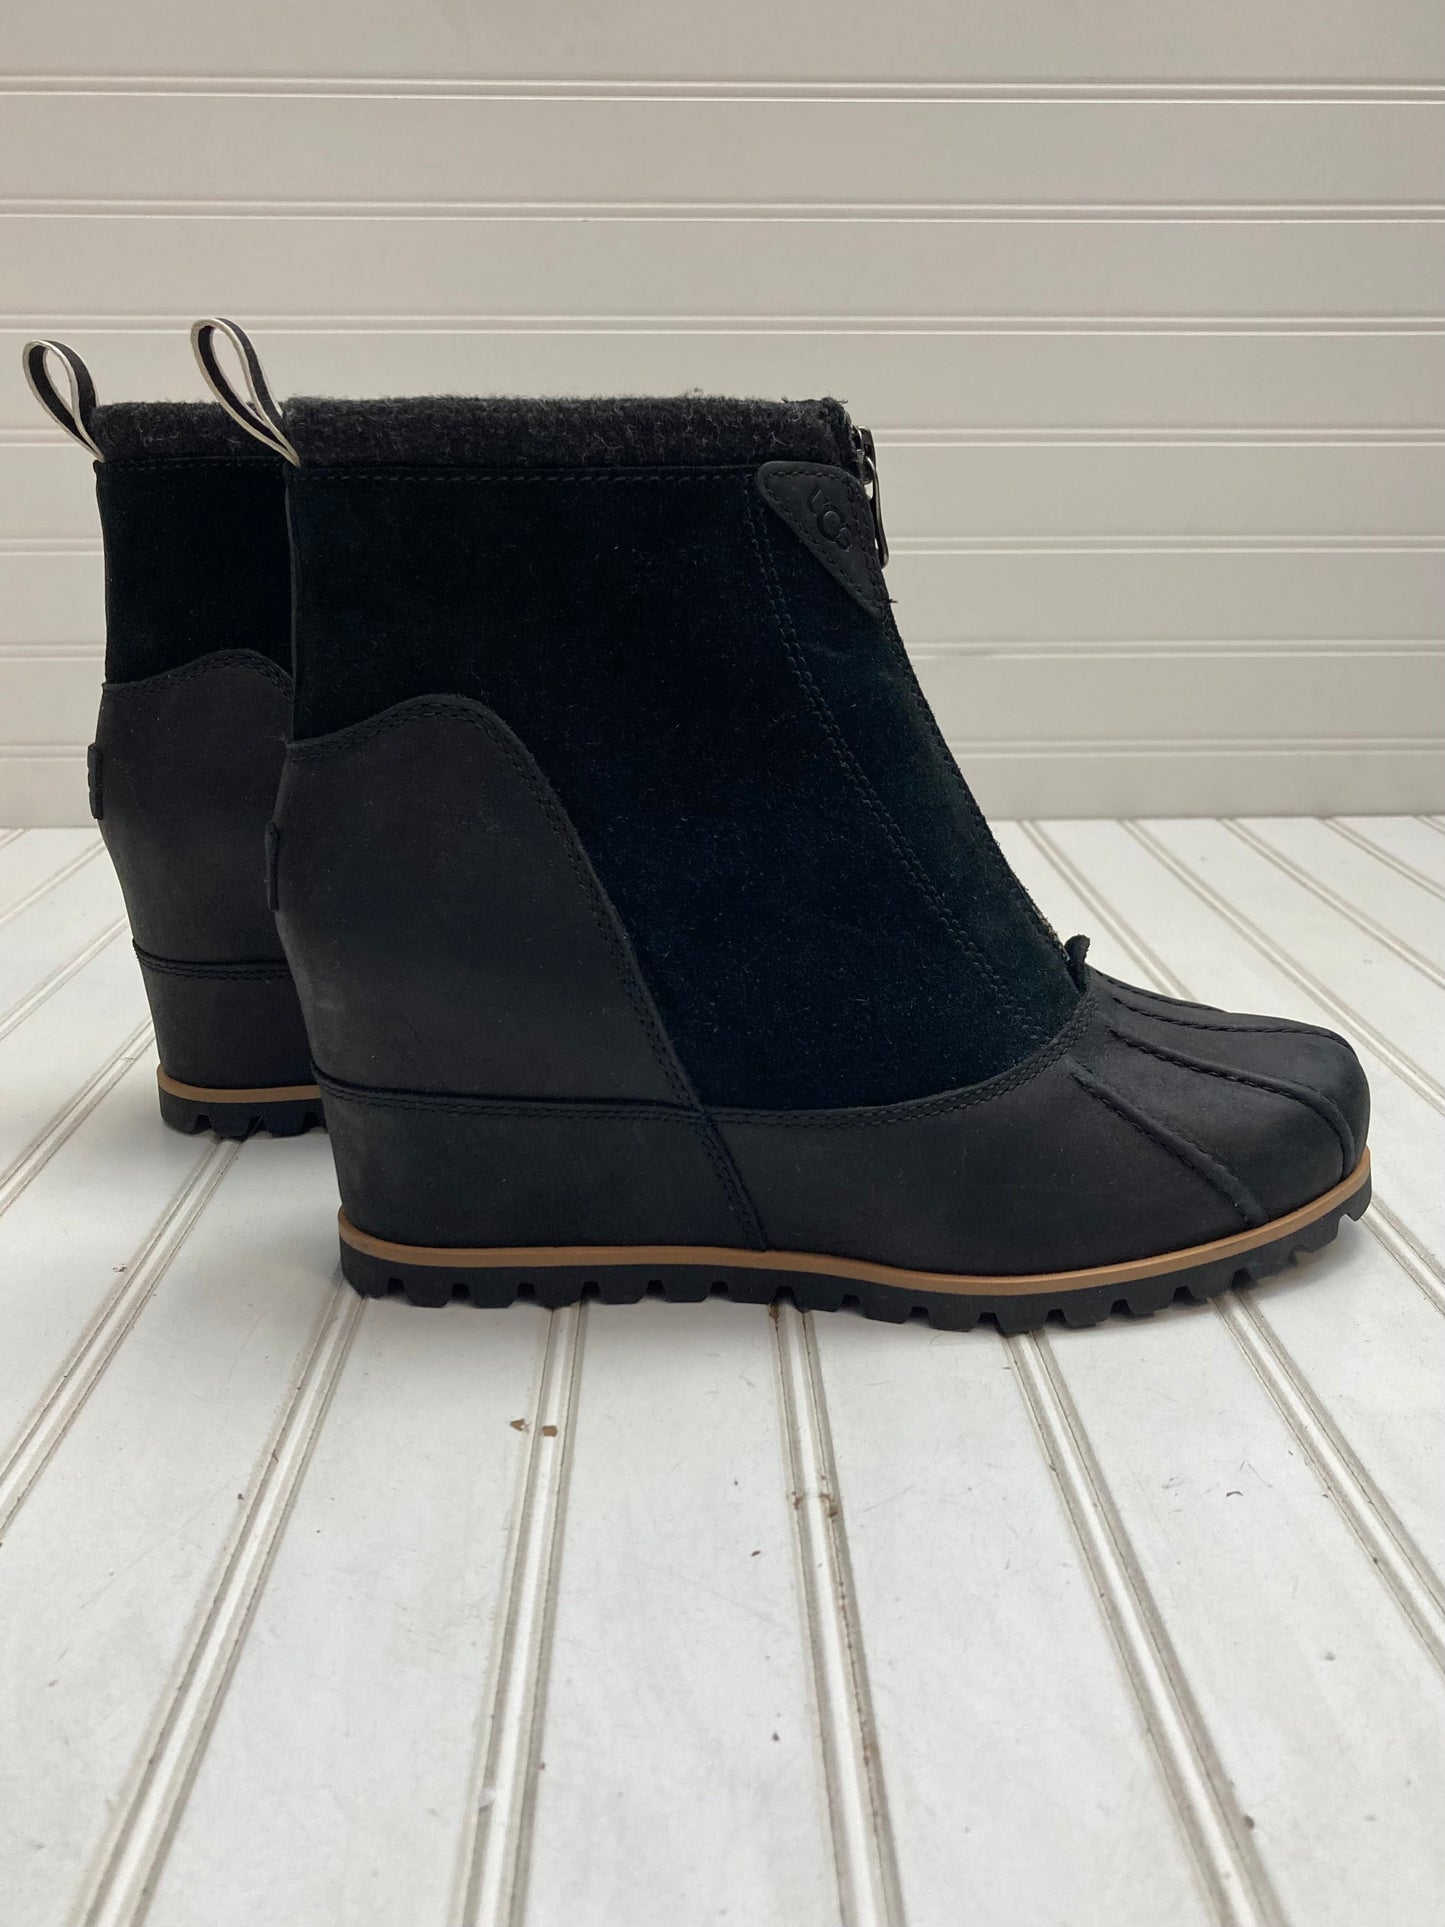 Black Boots Designer Ugg, Size 9